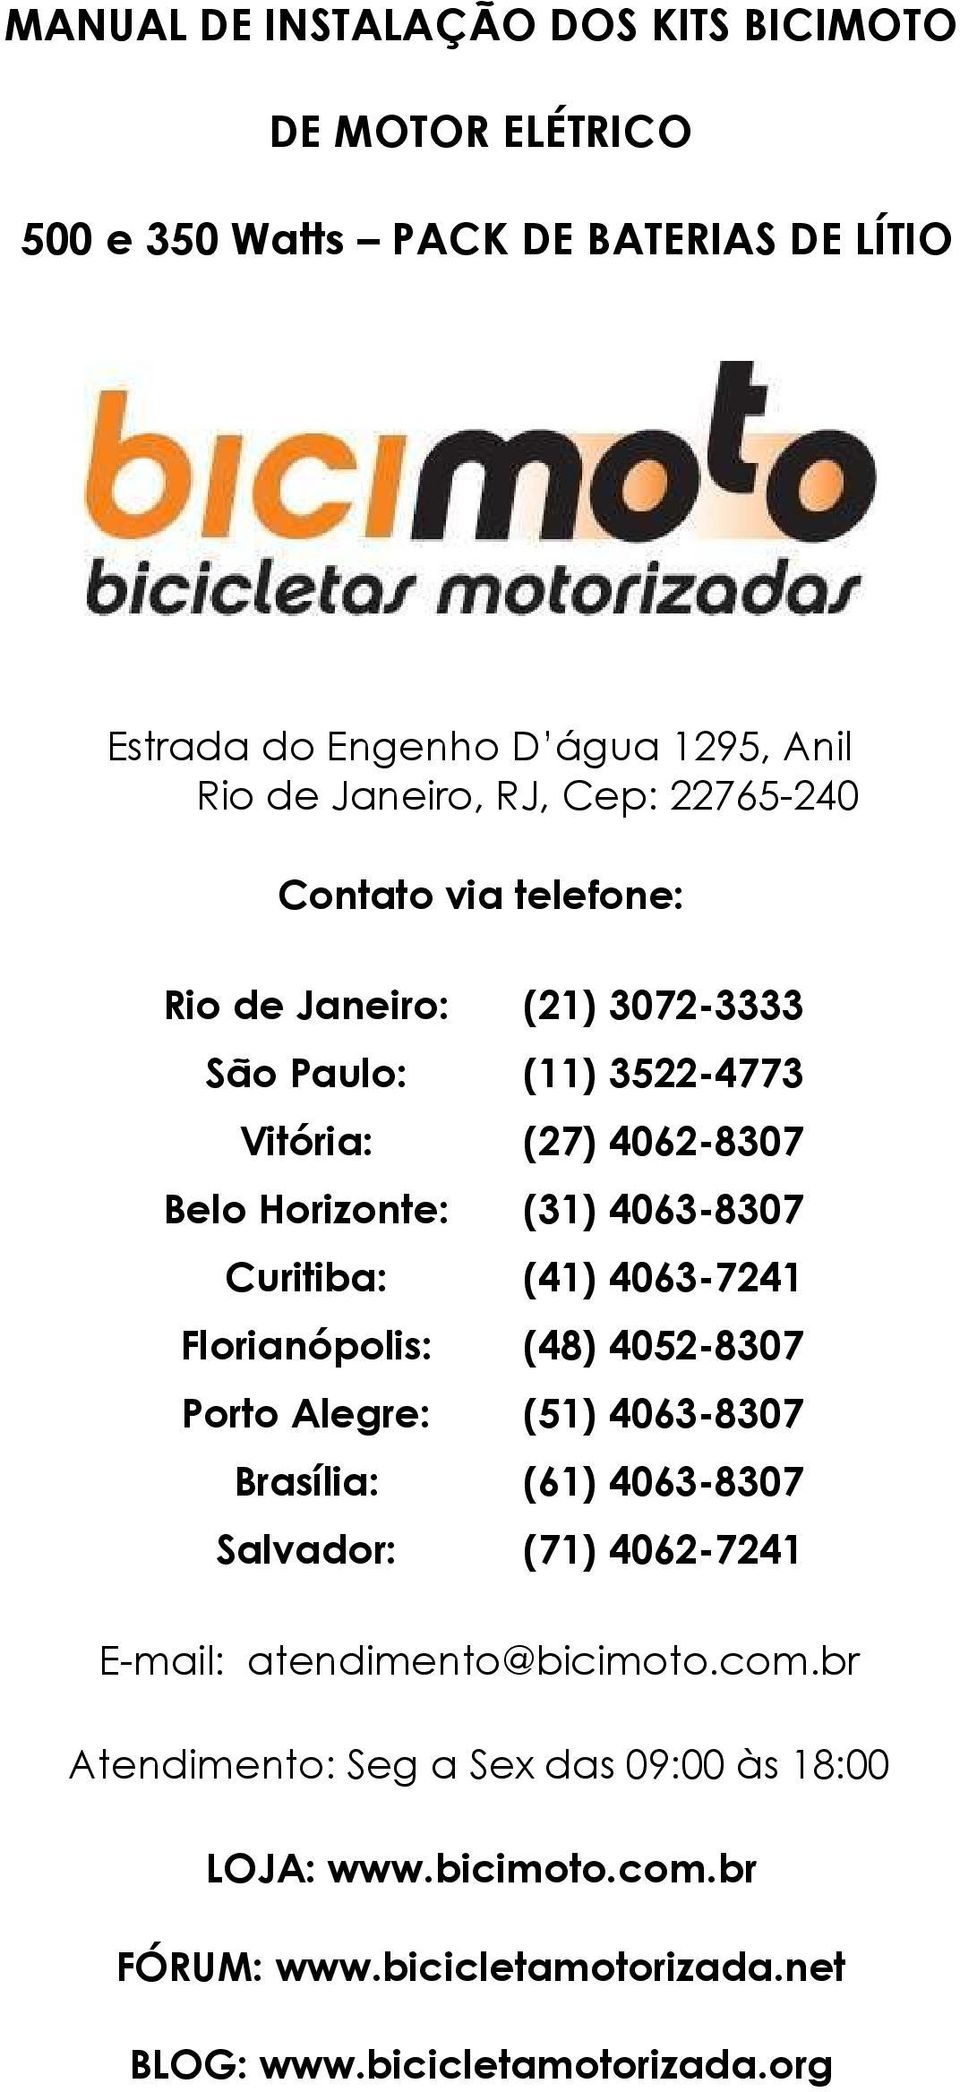 Curitiba: (41) 4063-7241 Florianópolis: (48) 4052-8307 Porto Alegre: (51) 4063-8307 Brasília: (61) 4063-8307 Salvador: (71) 4062-7241 E-mail: